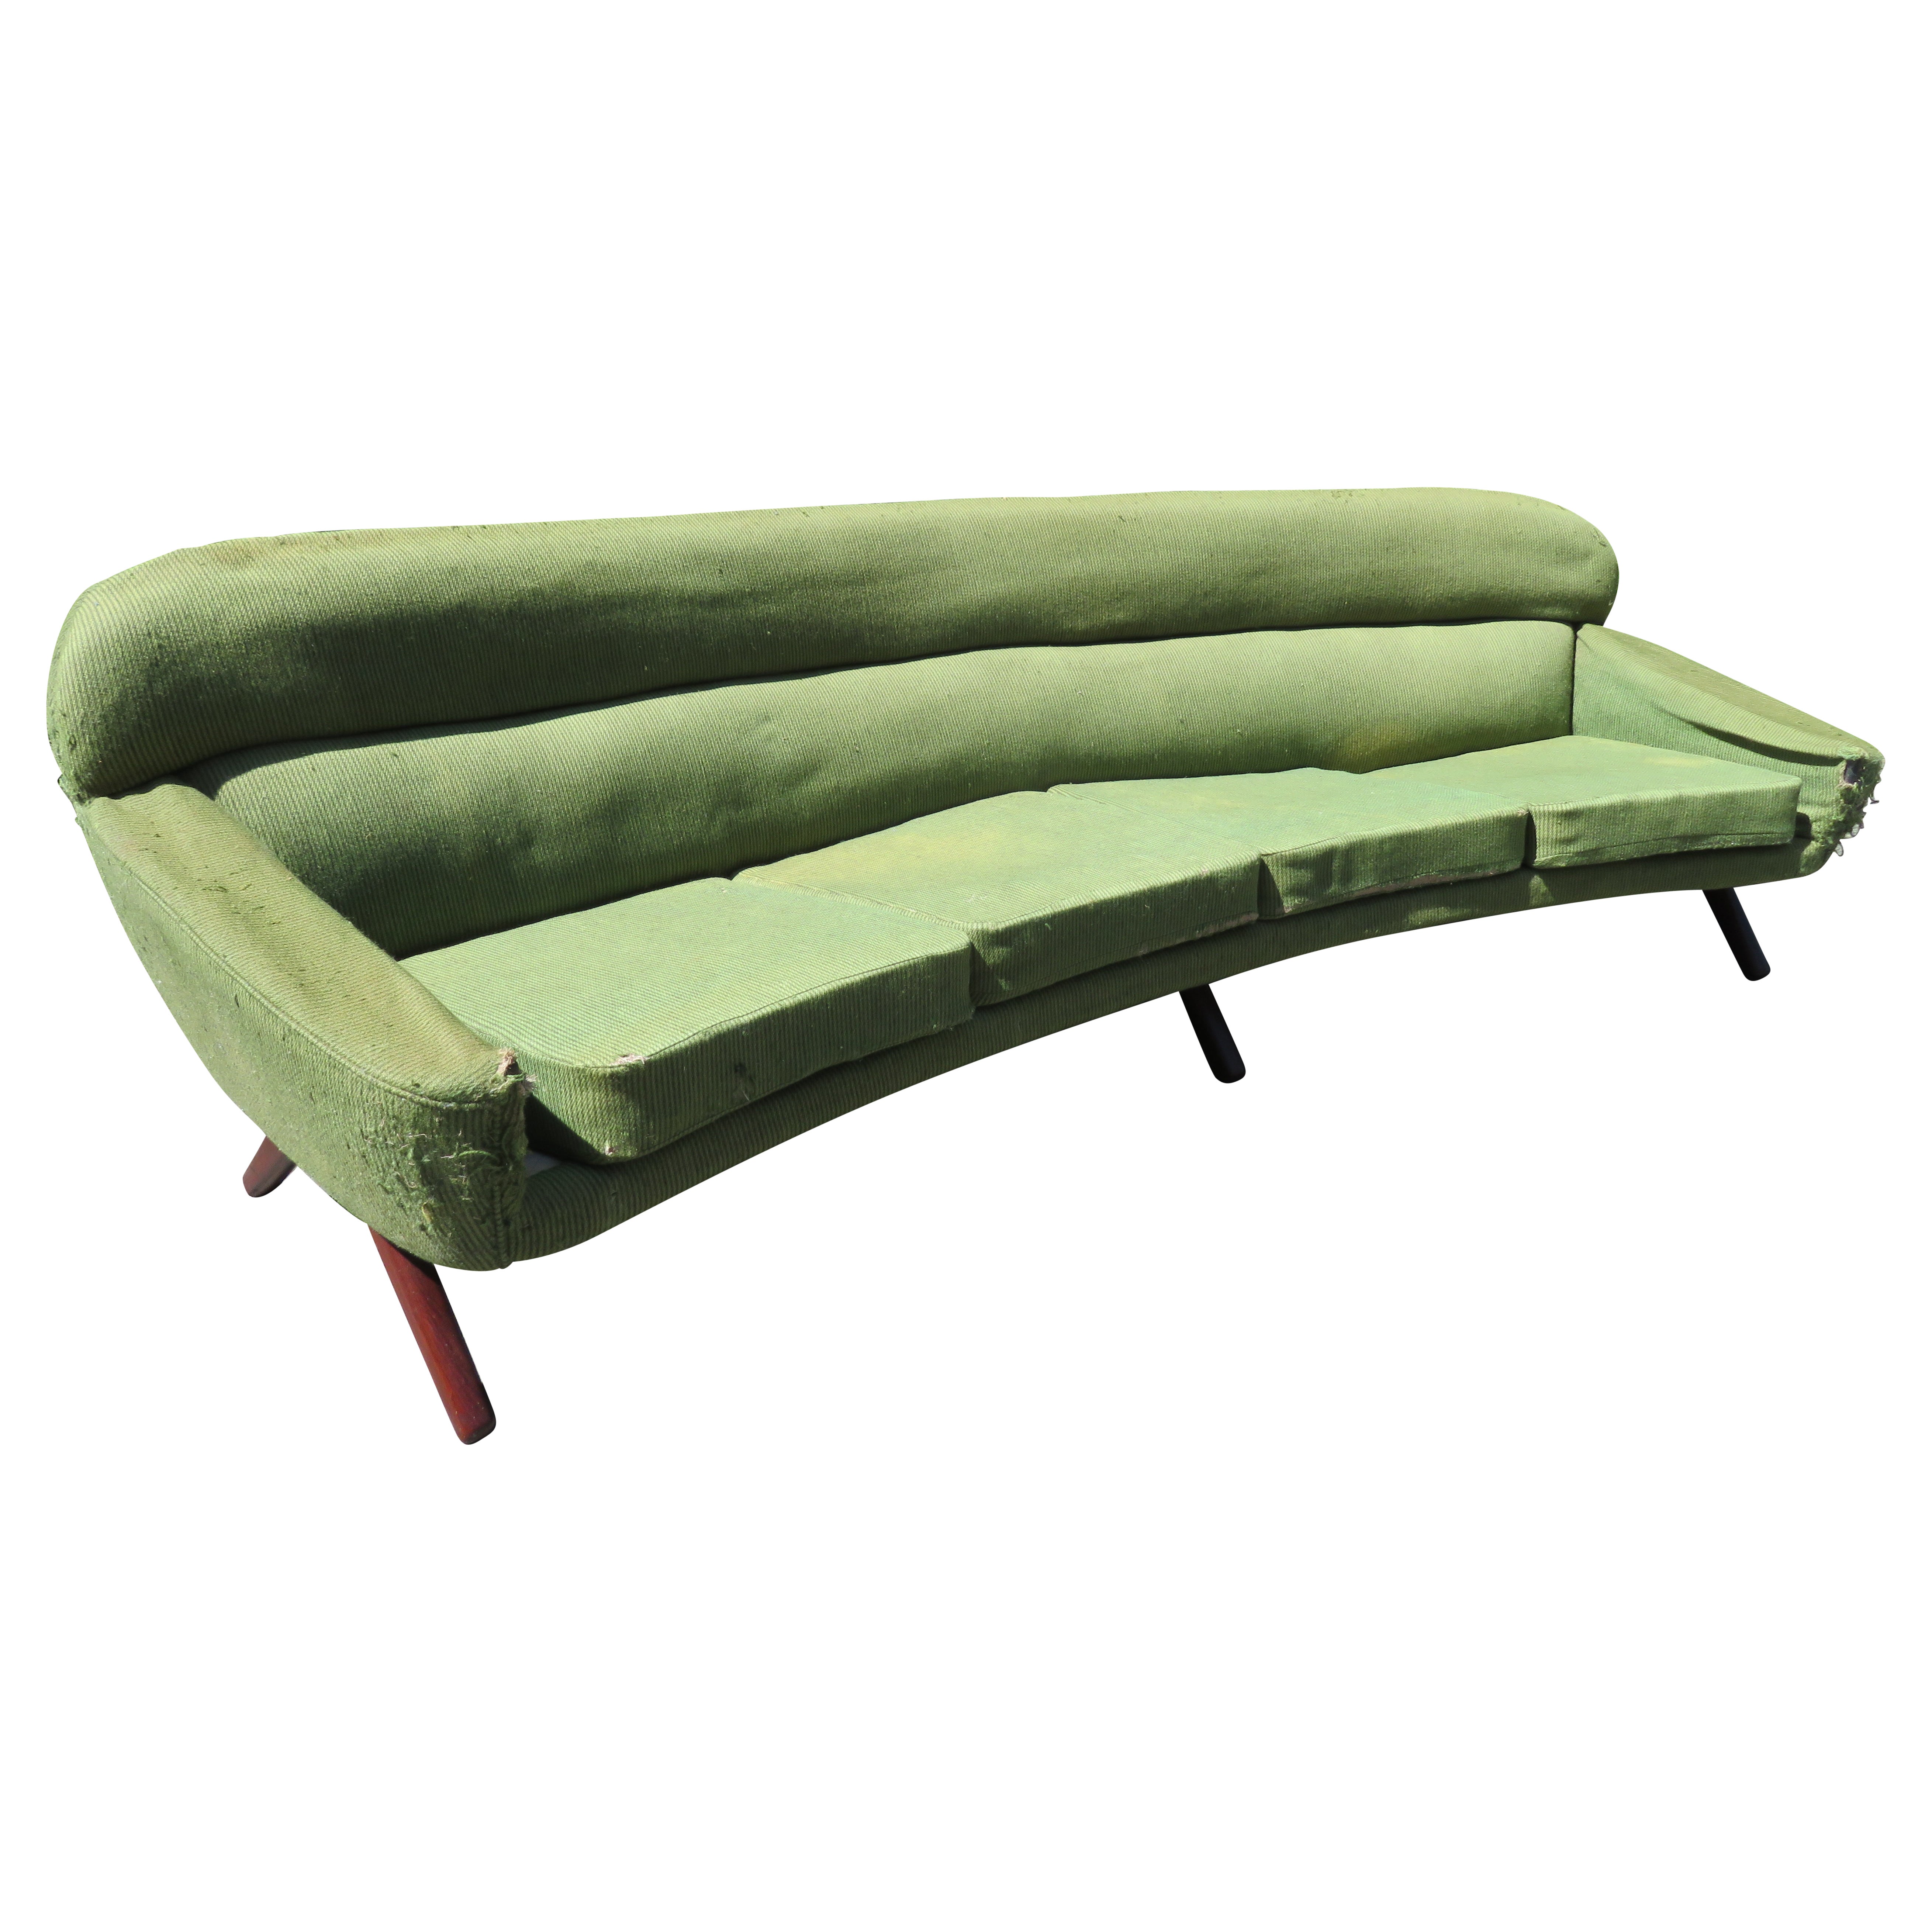 Remarquable canapé danois moderne incurvé de style Leif Hansen, milieu du siècle dernier